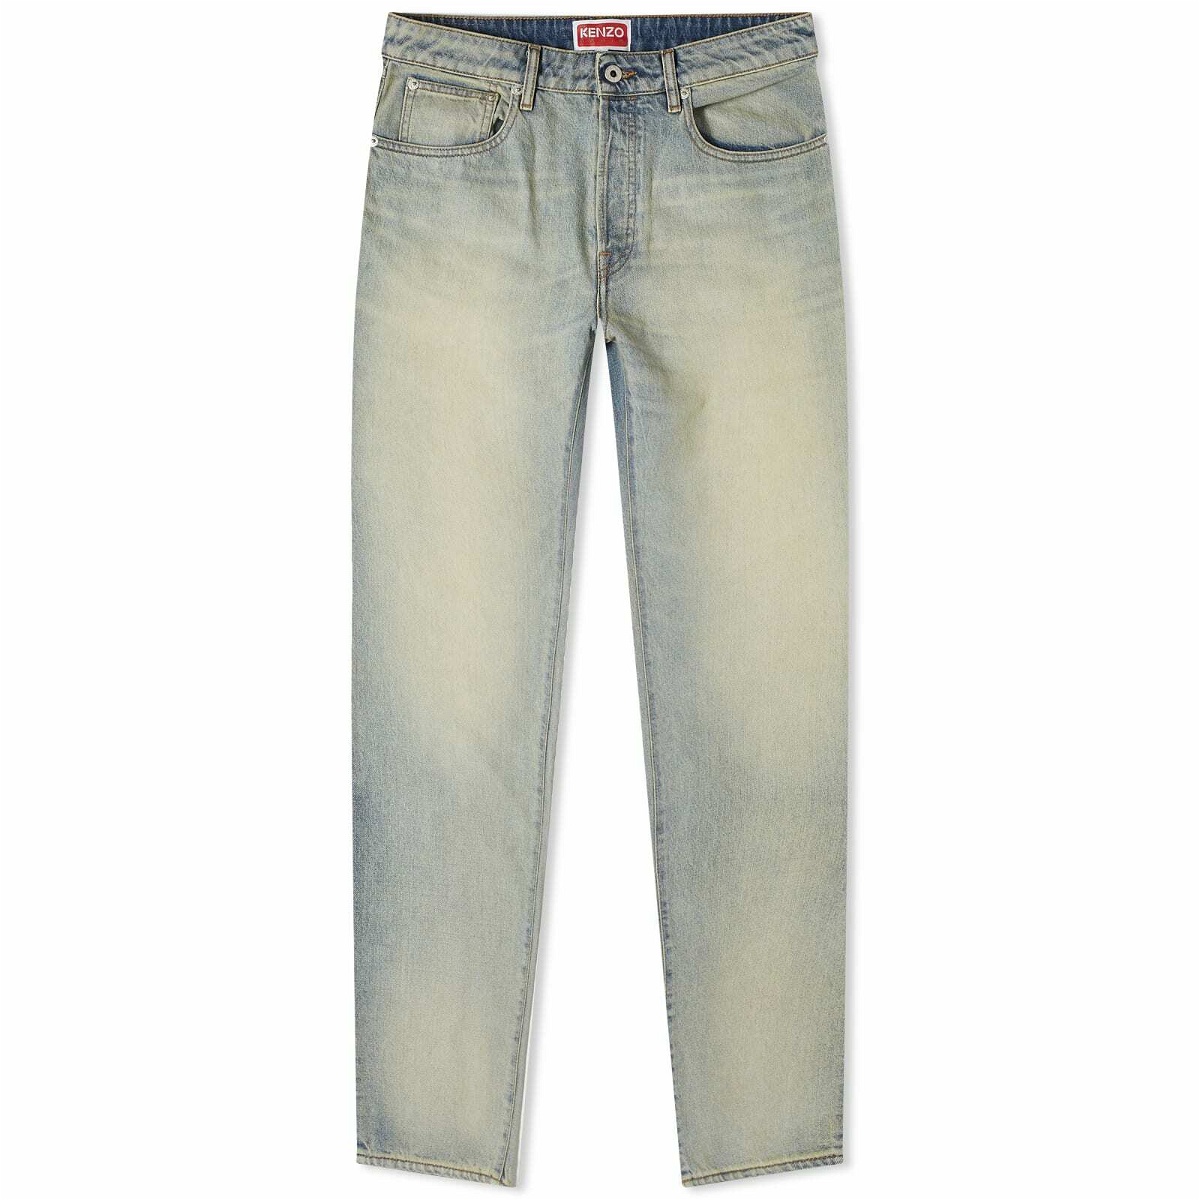 Photo: Kenzo Men's Slim Jeans in Stone Blue Denim